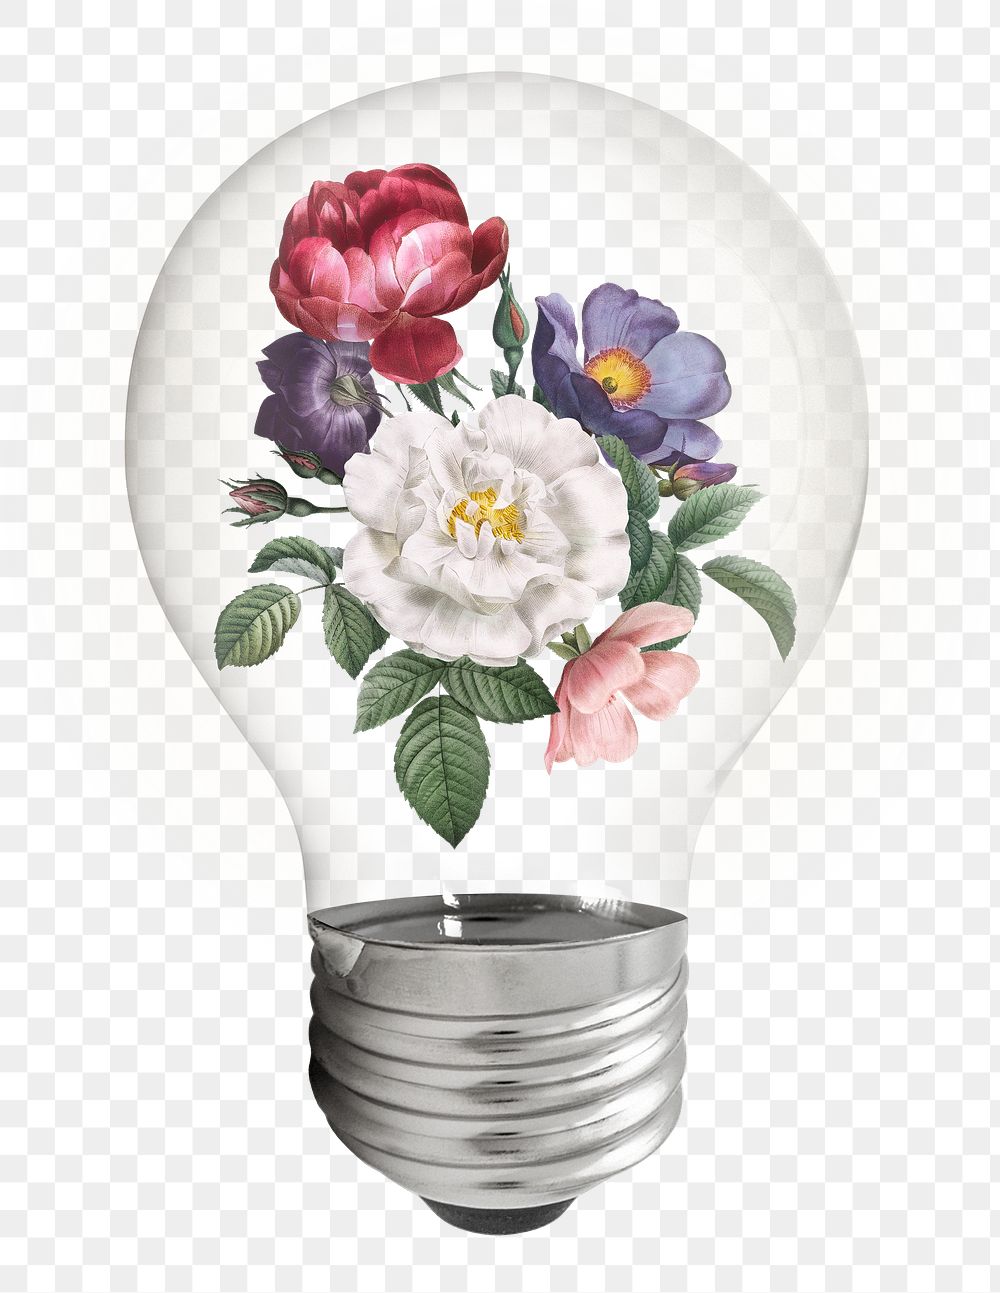 Spring flowers png light bulb, vintage botanical illustration on transparent background